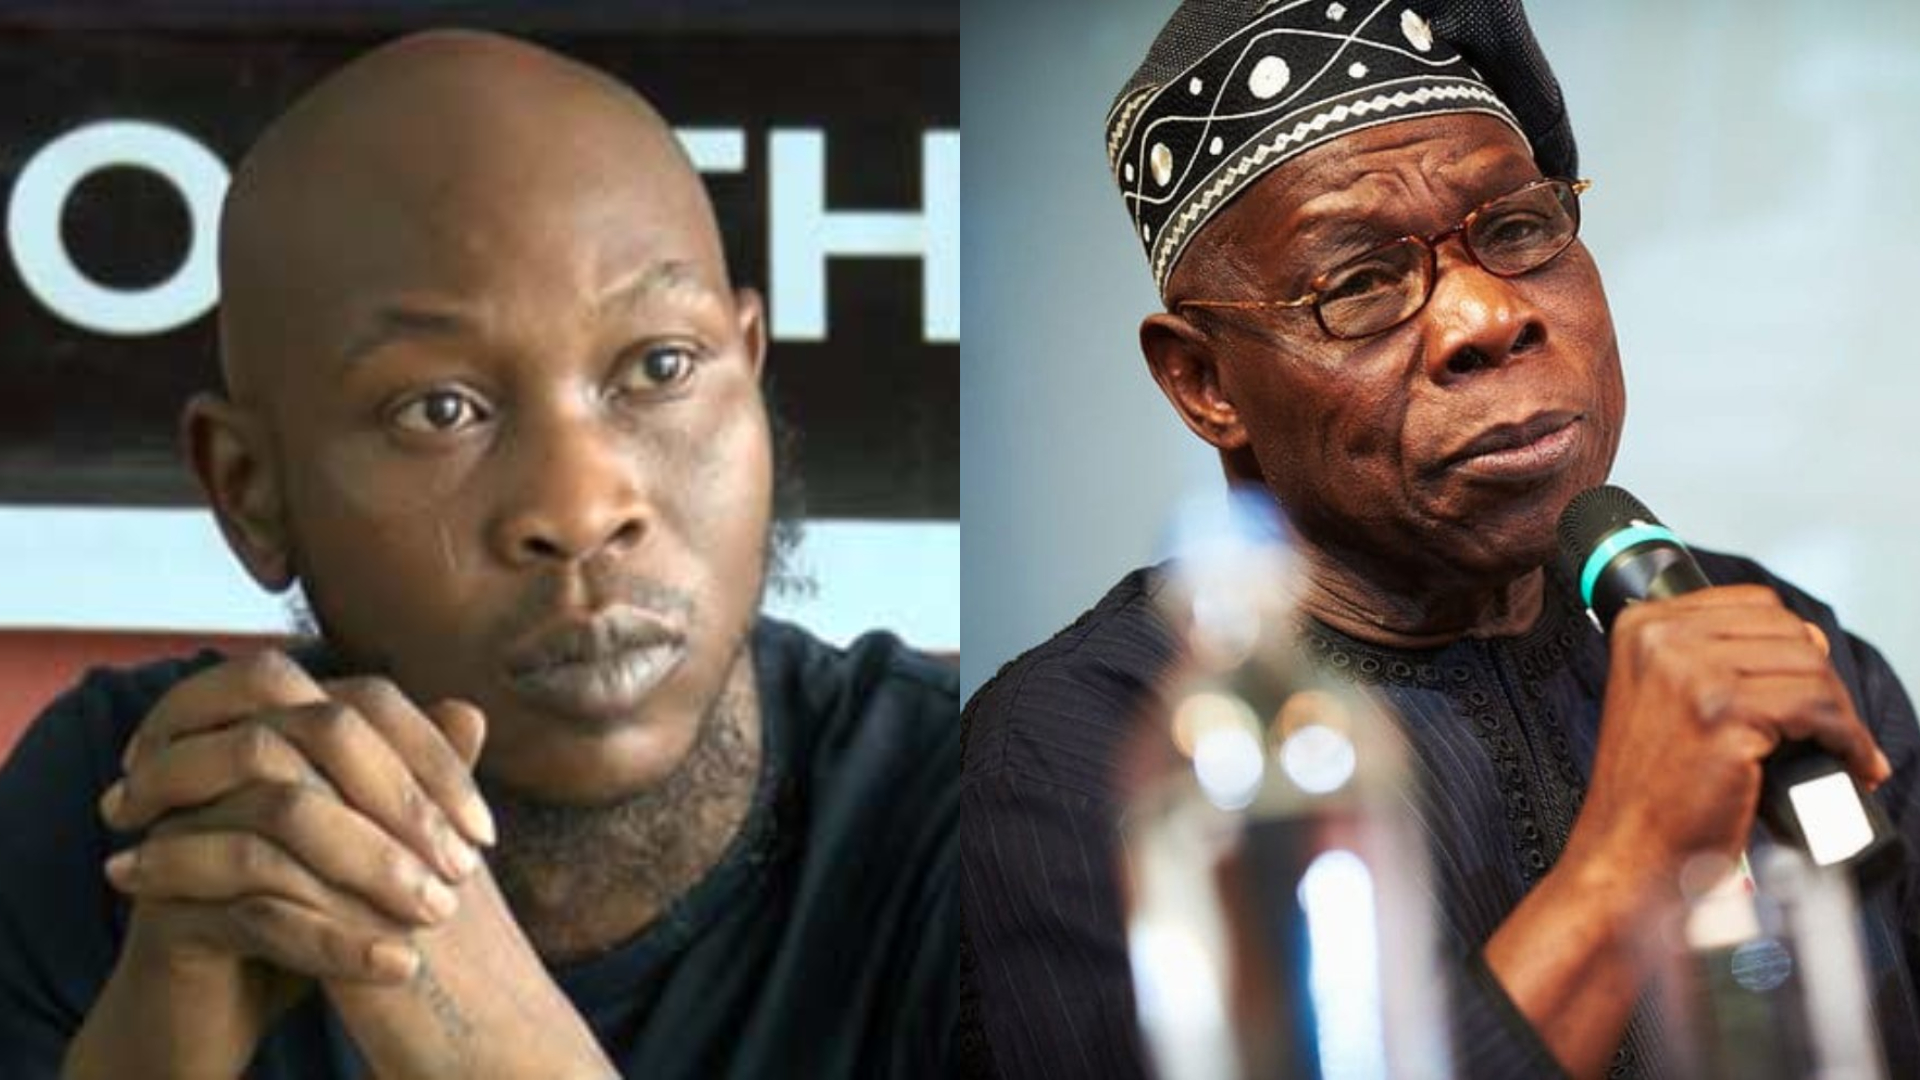 Seun Kuti says Obasanjo's supporters are oppressors | Pulse Nigeria